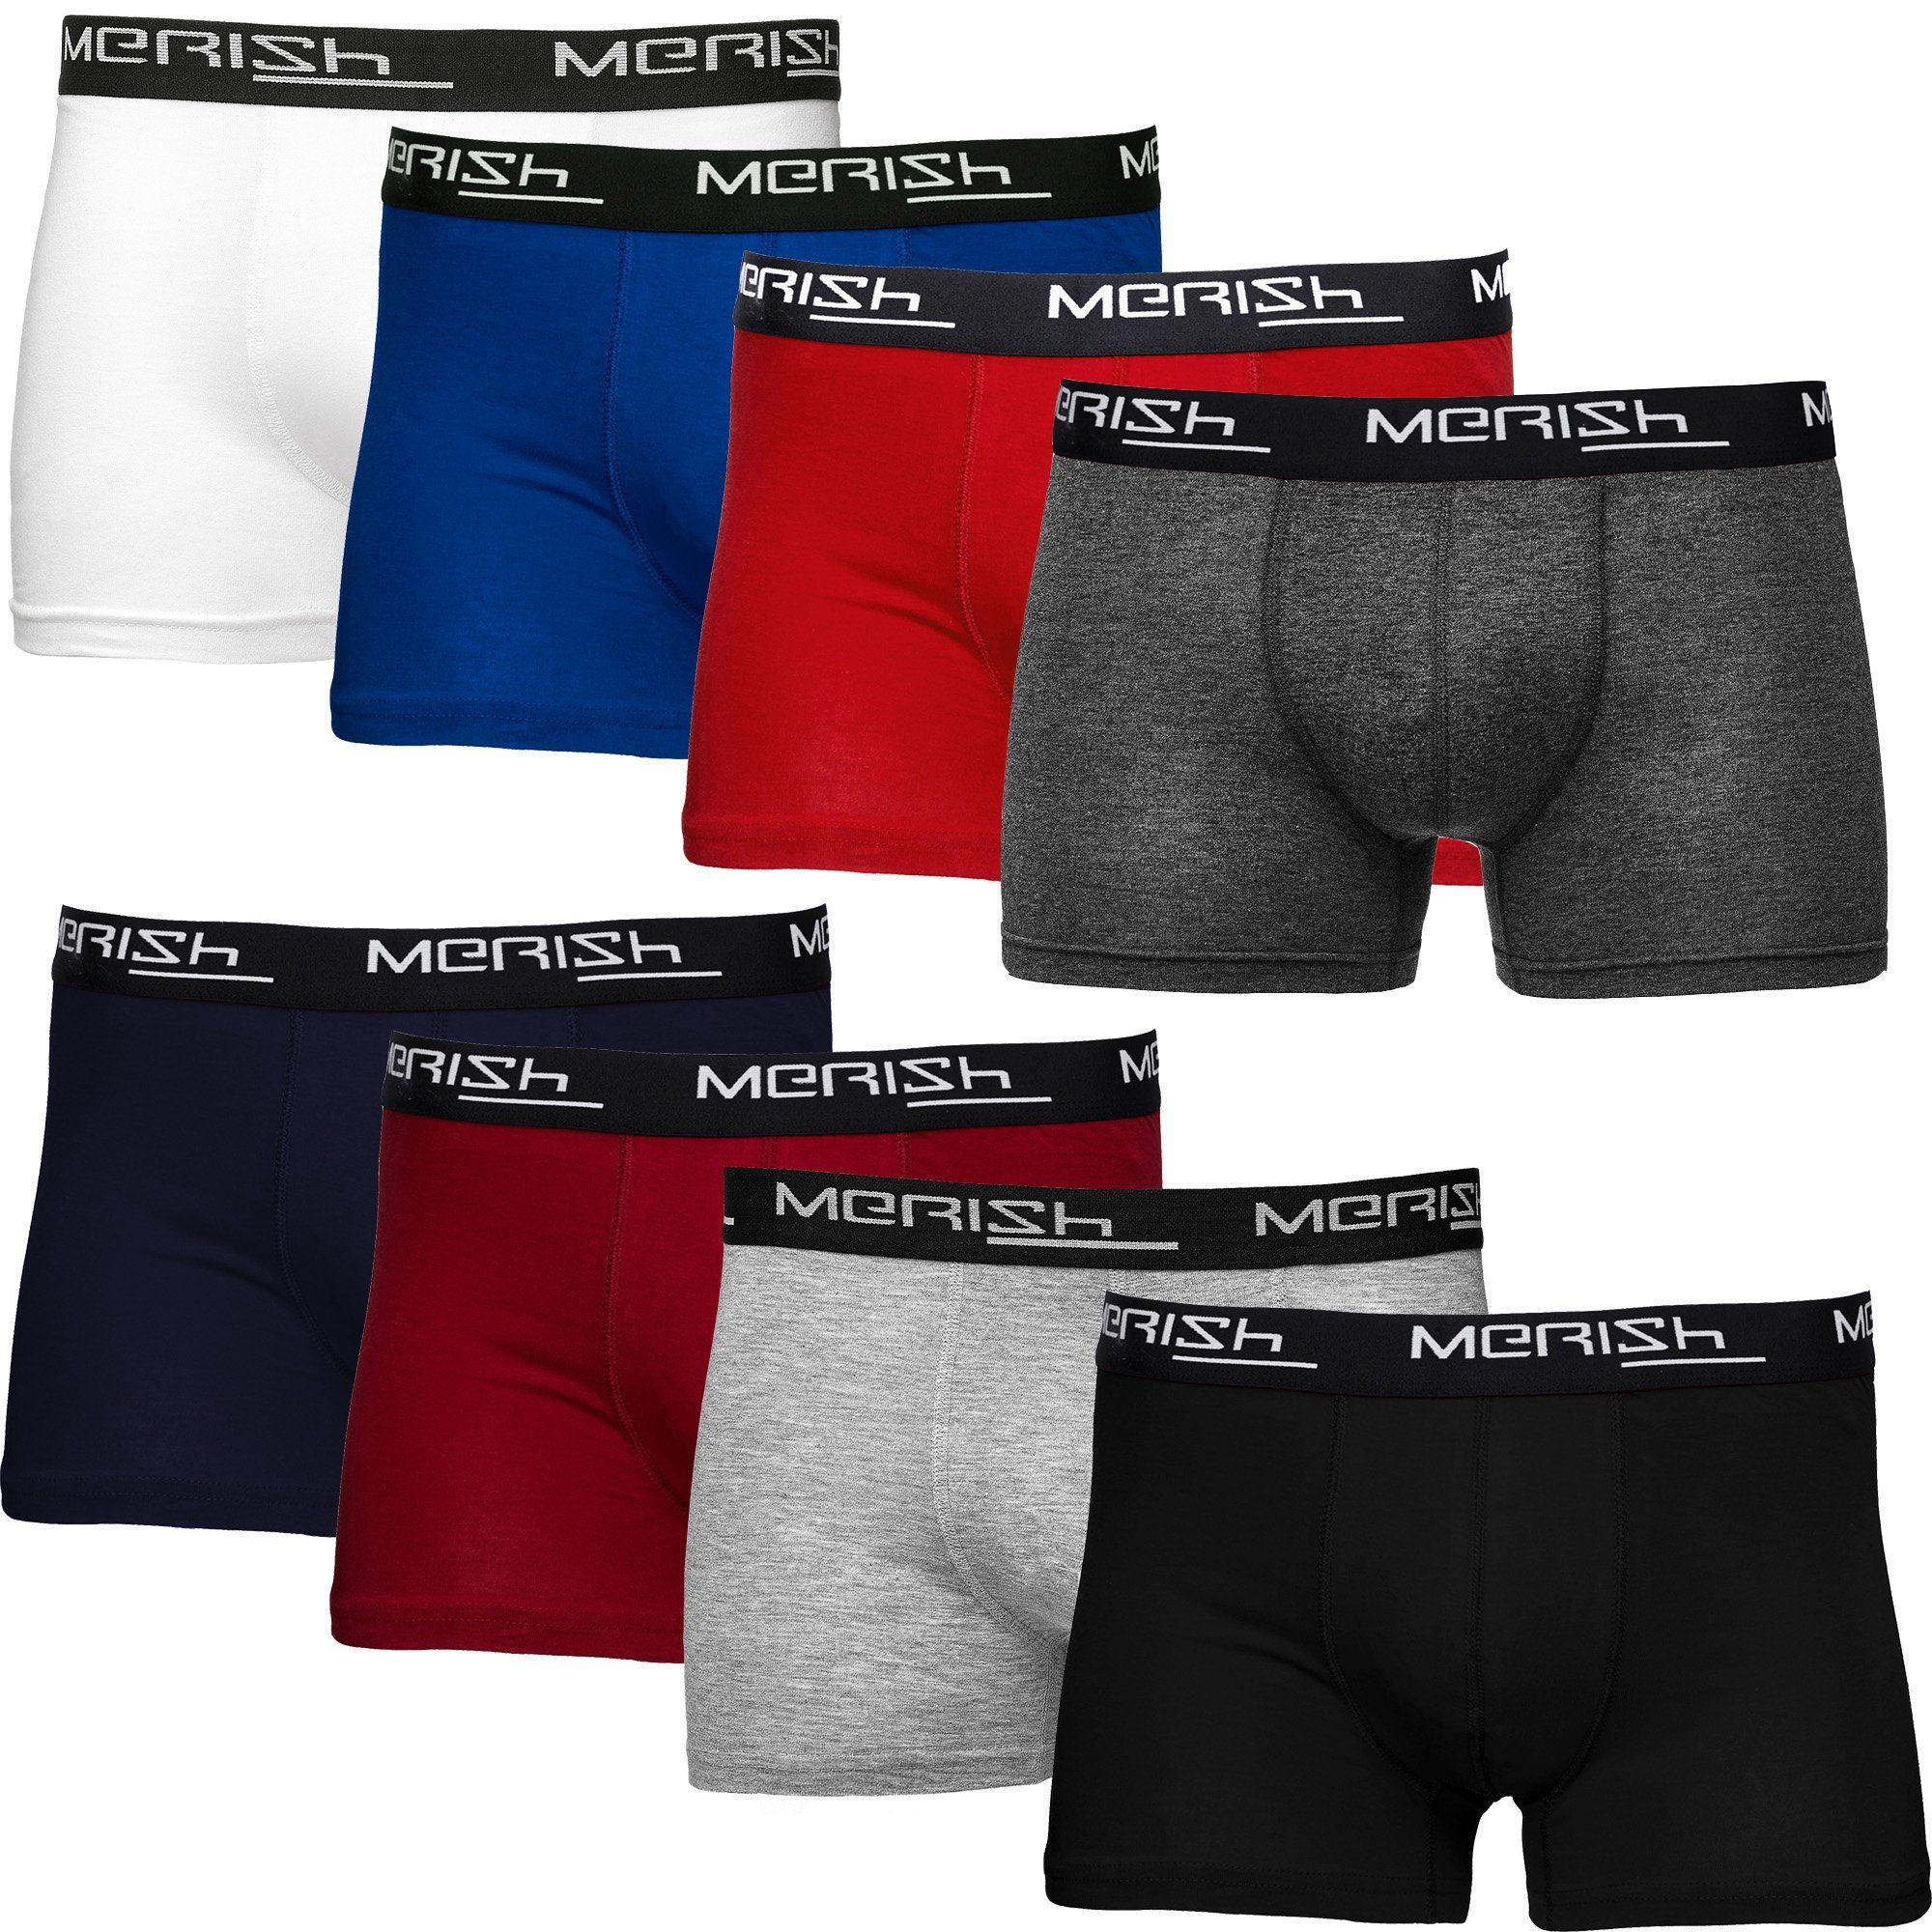 MERISH Boxershorts Herren Männer Unterhosen Baumwolle Premium Qualität perfekte Passform (Vorteilspack, 8er-Pack) S - 7XL 216d-mehrfarbig